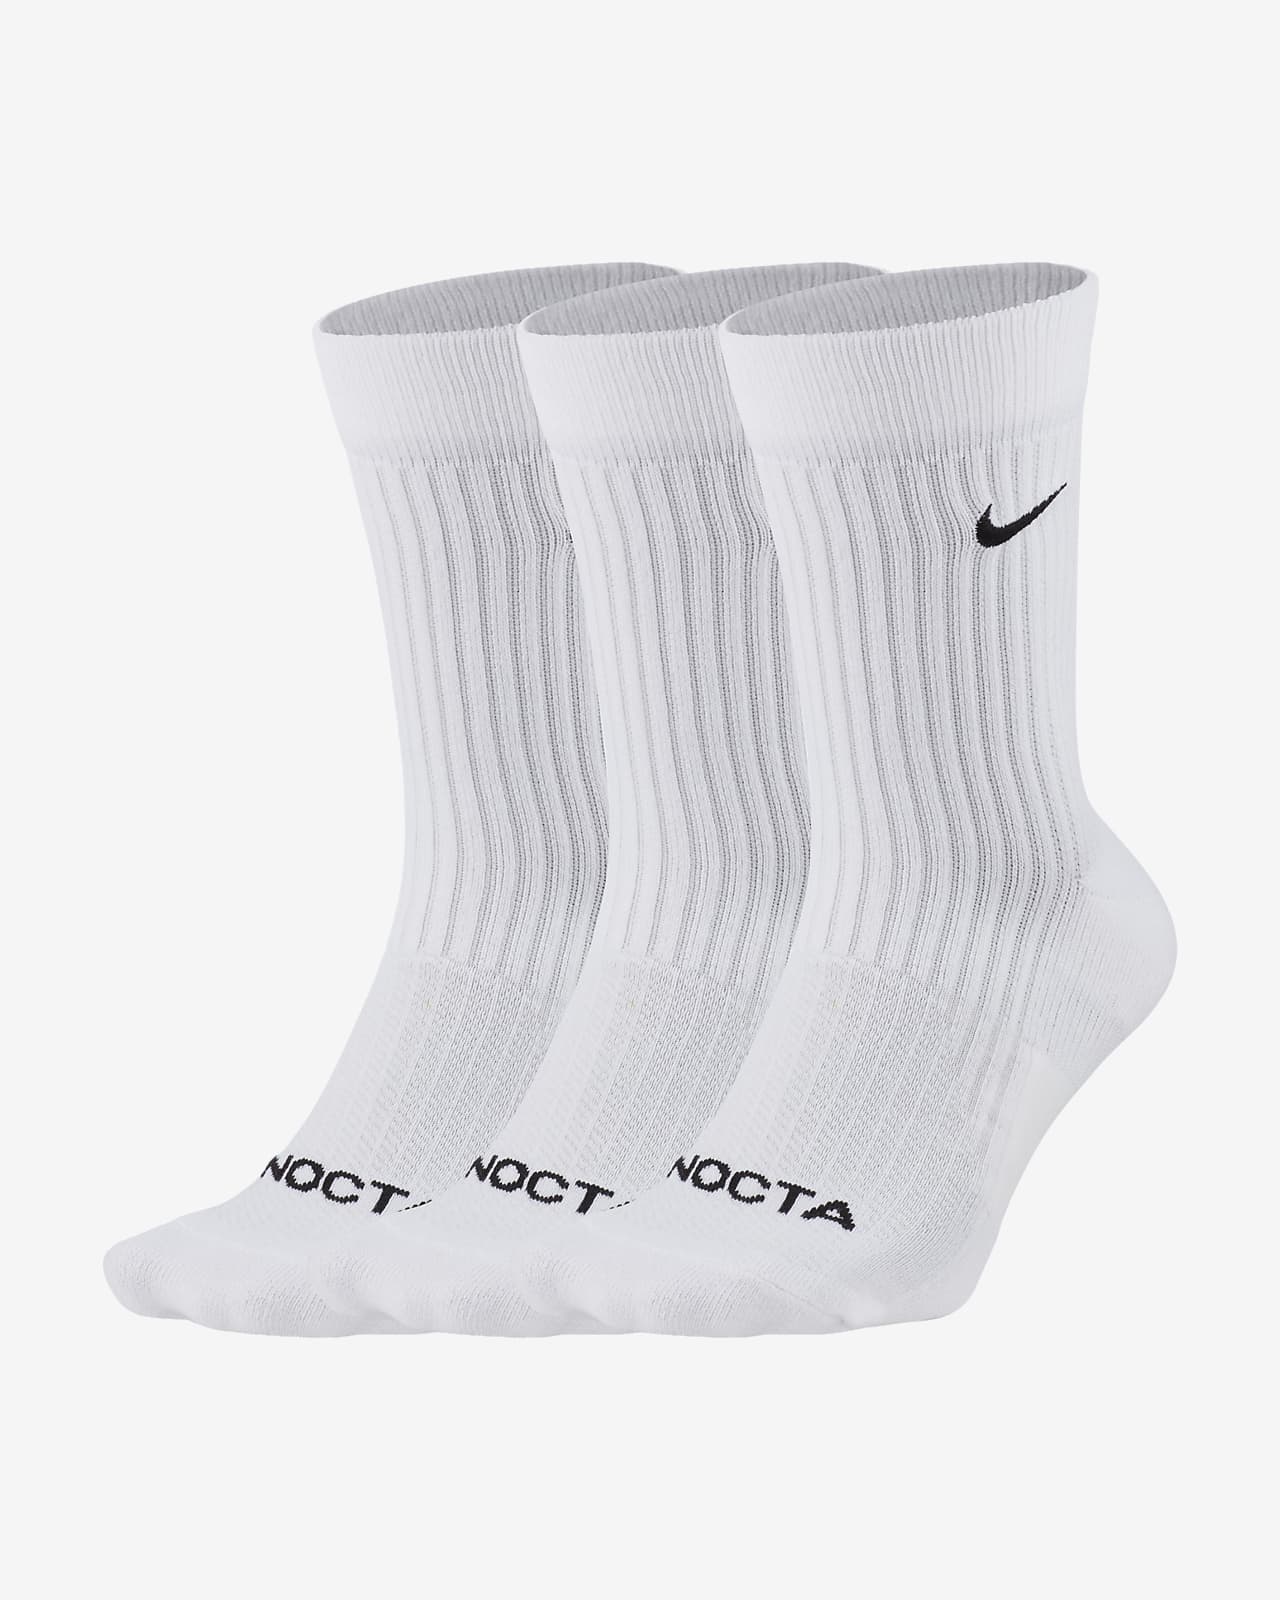 NOCTA Crew sokken (3 paar)